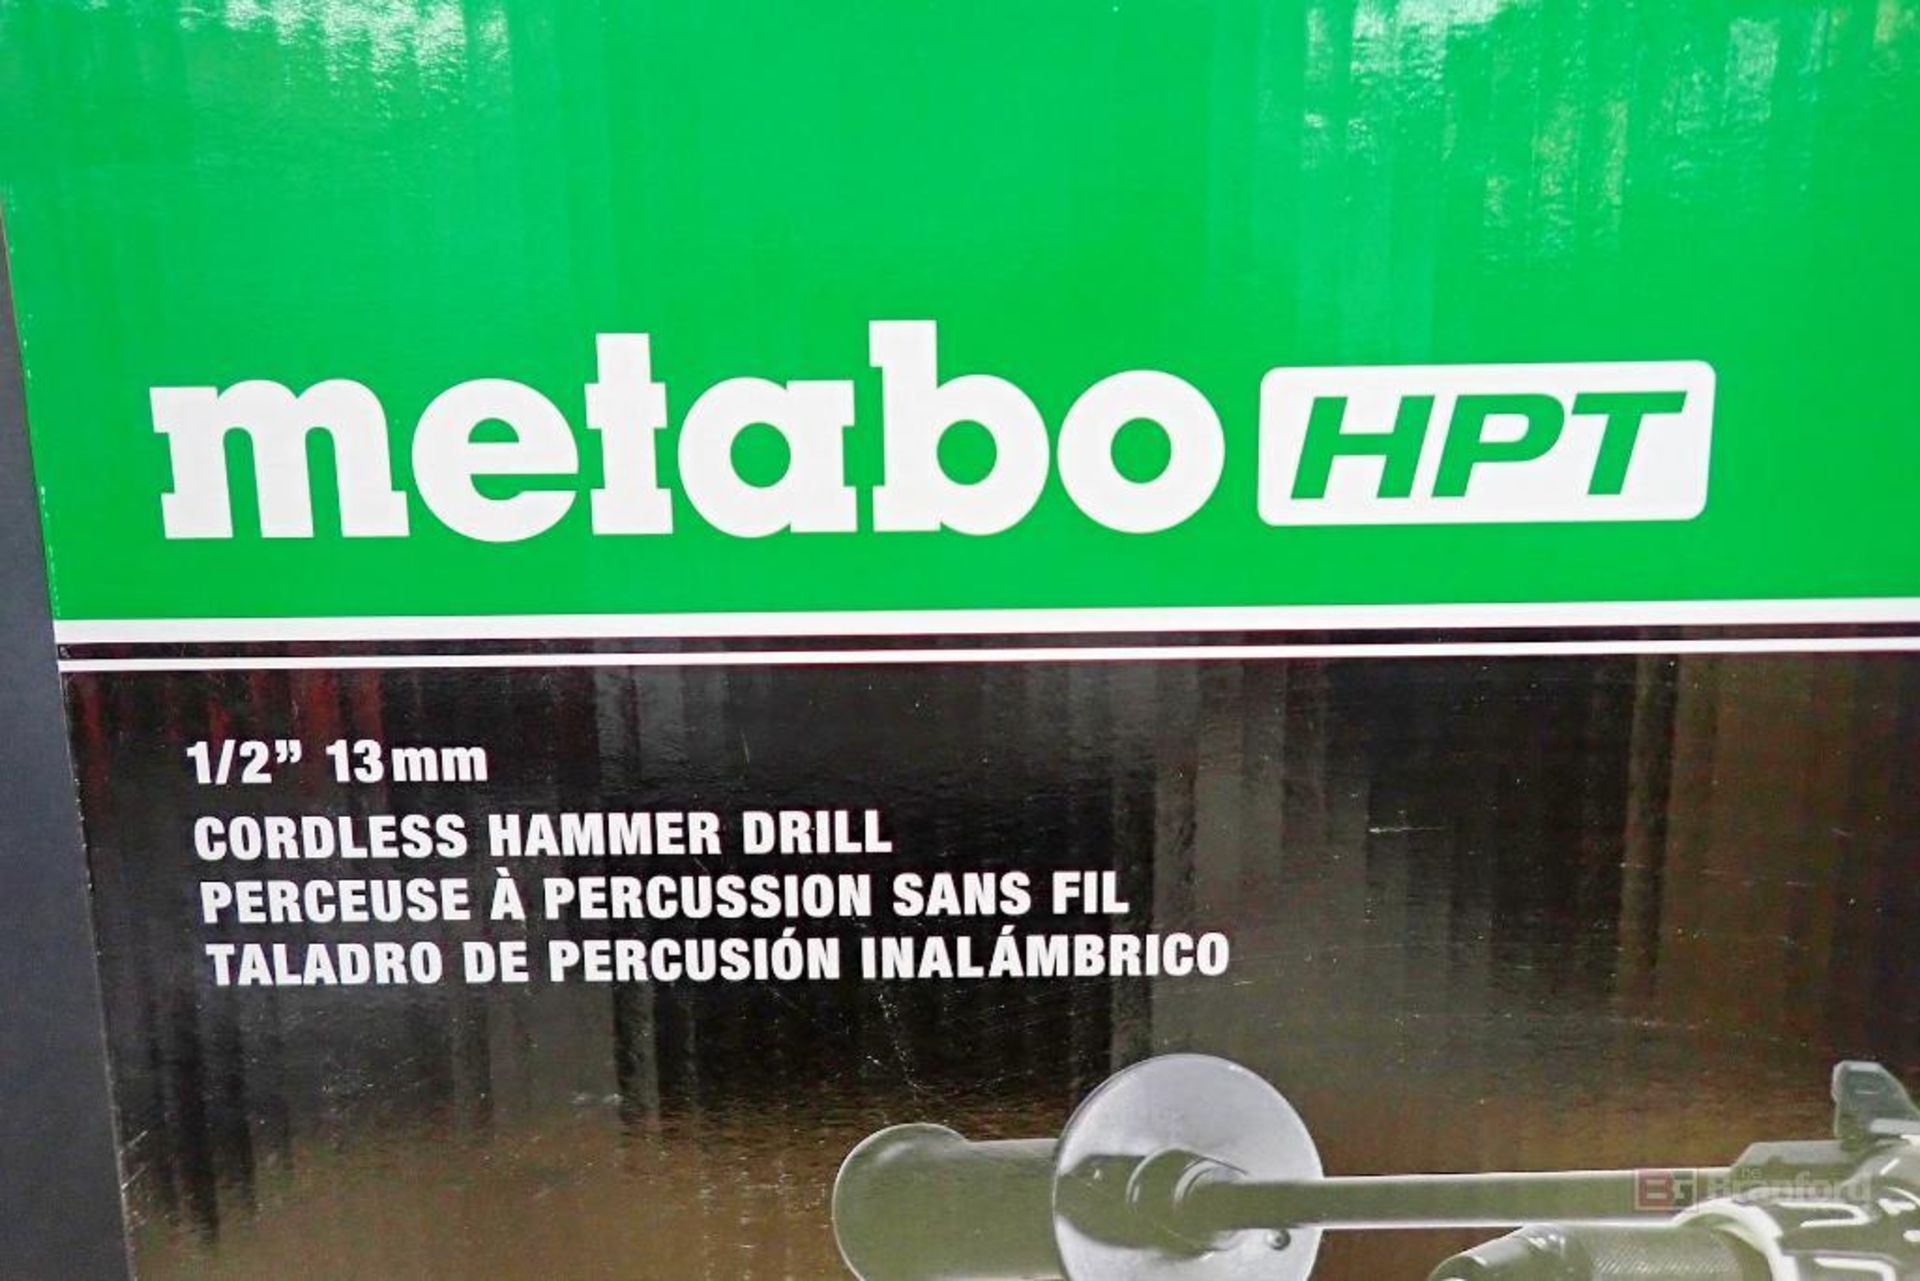 Metabo HPT DV36DA MultiVolt Brushless RFC 1/2" 13mm Cordless Hammer Drill - Image 3 of 13